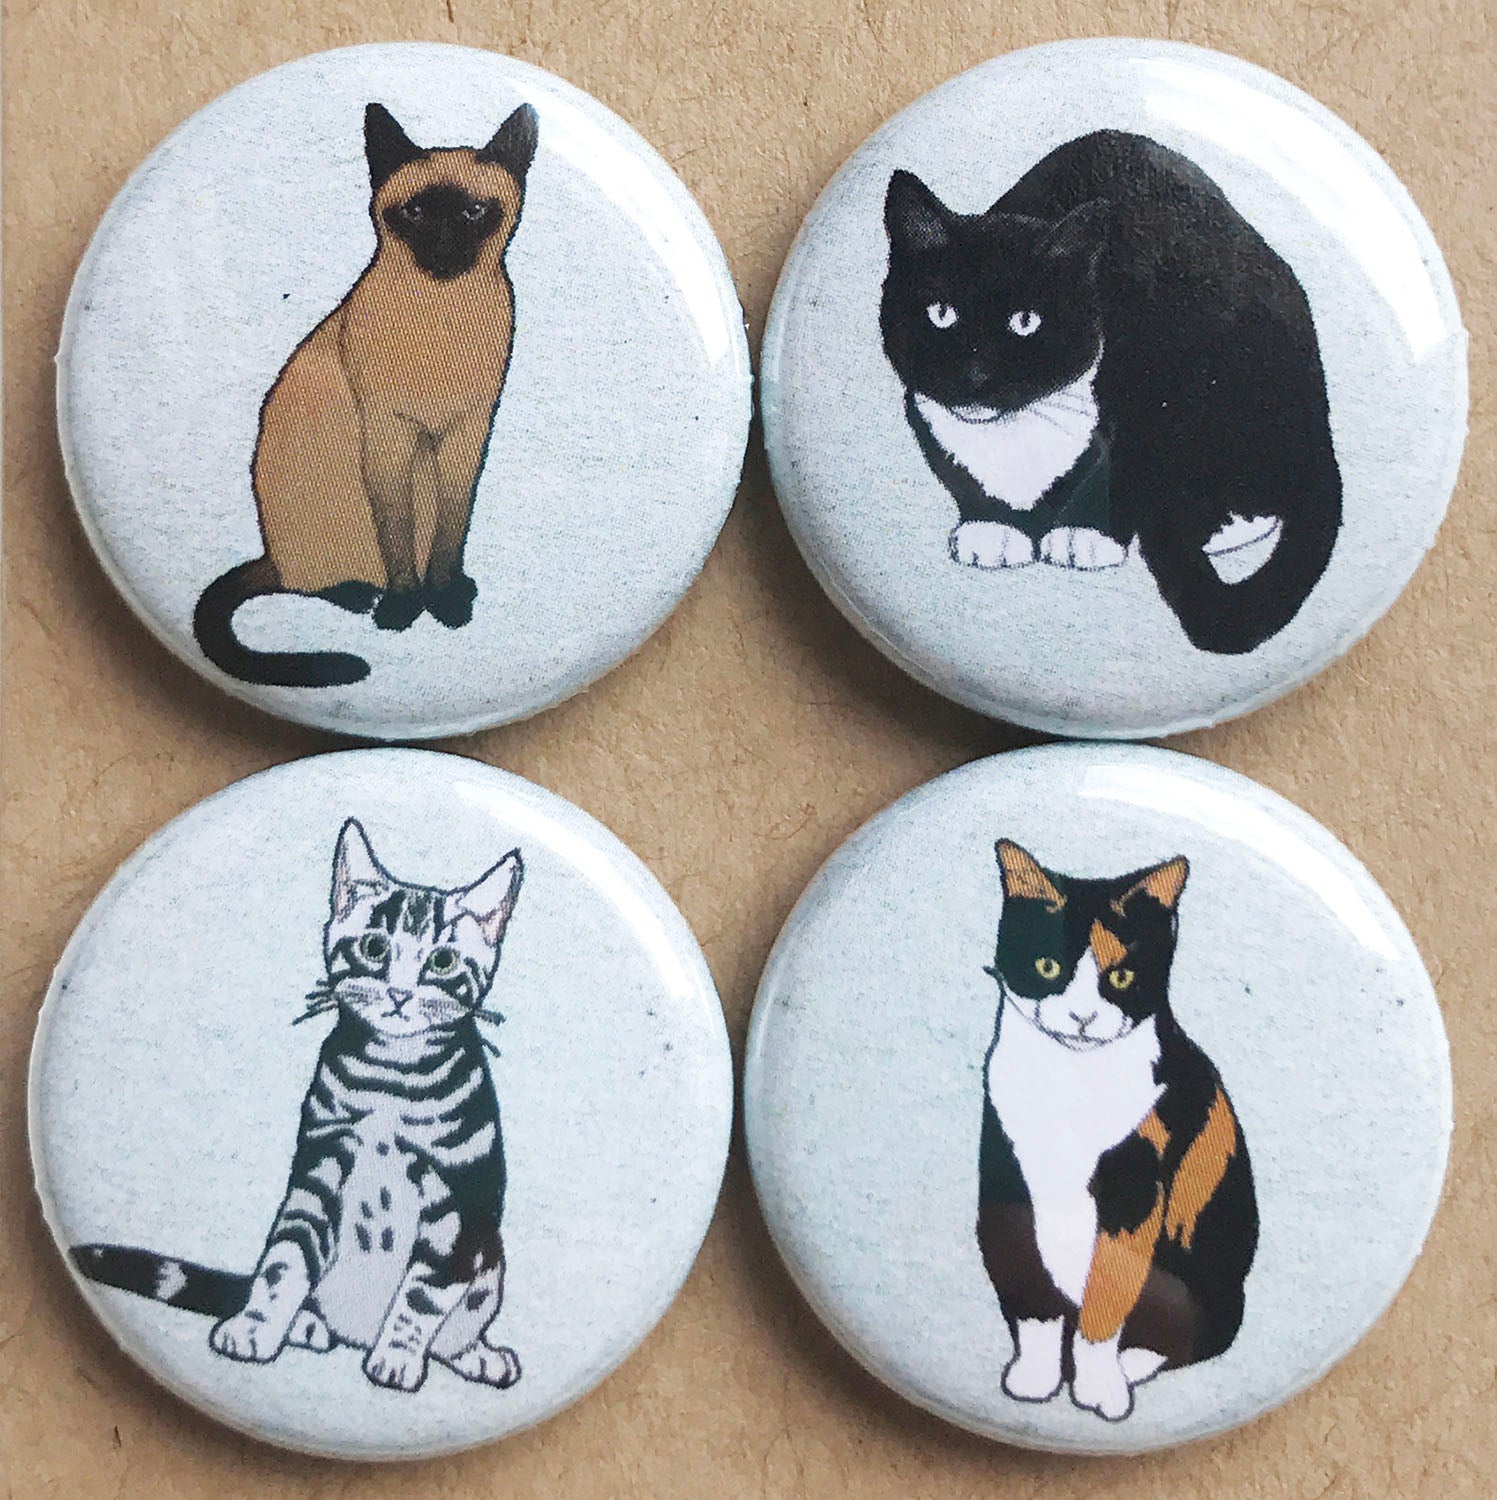 Cat badge set